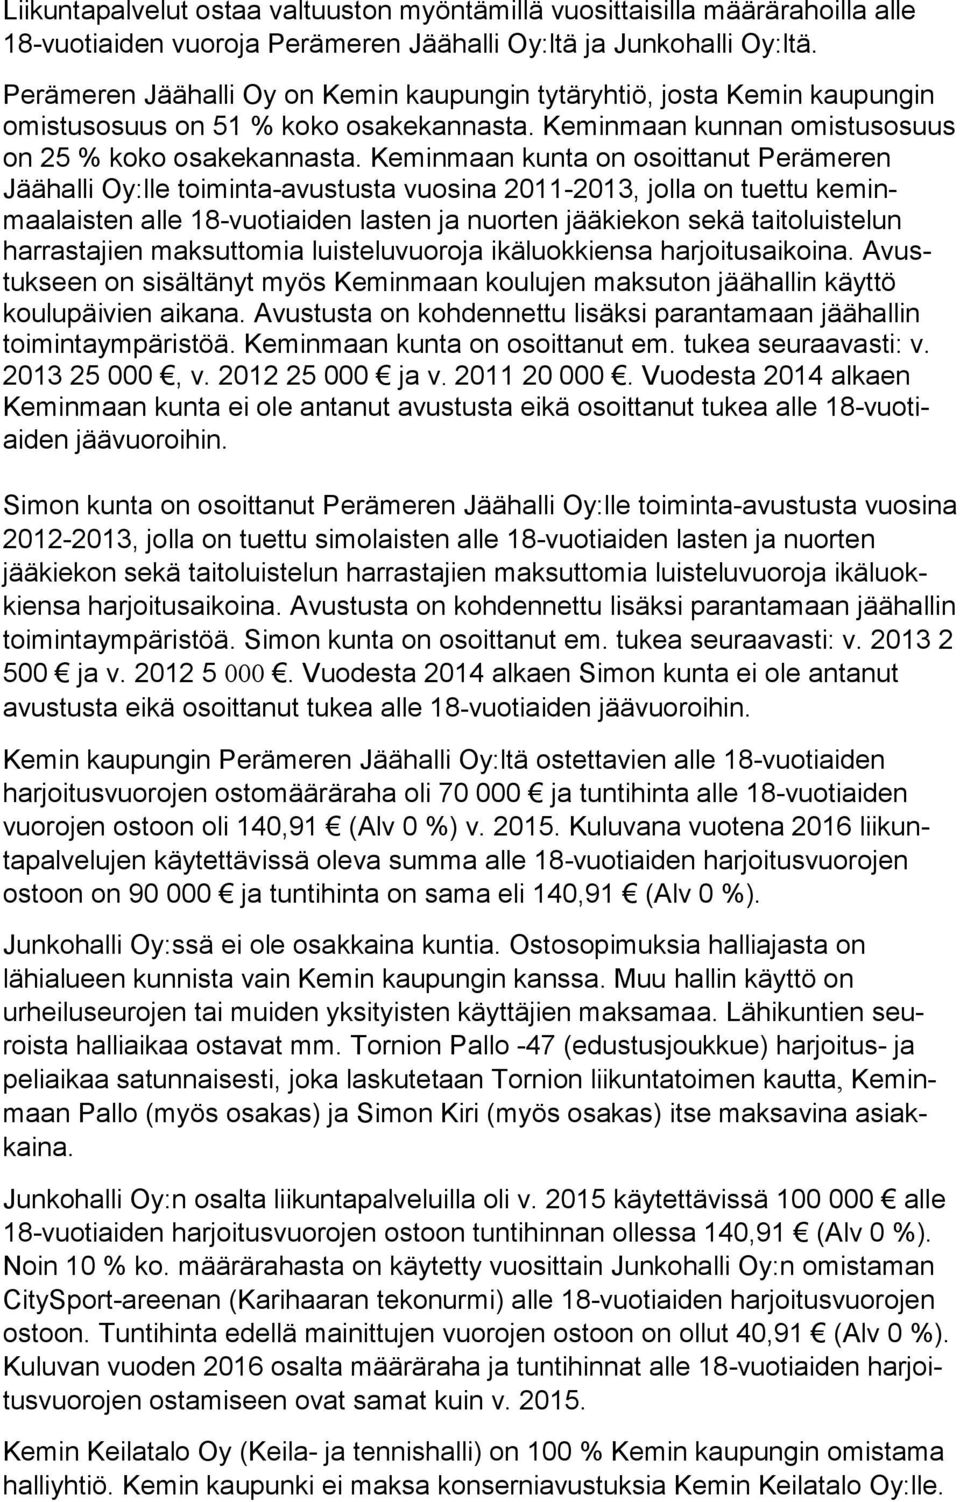 Keminmaan kunta on osoittanut Perämeren Jäähalli Oy:lle toiminta-avustusta vuosina 2011-2013, jolla on tuettu keminmaalaisten alle 18-vuotiaiden lasten ja nuorten jääkiekon sekä taitoluistelun